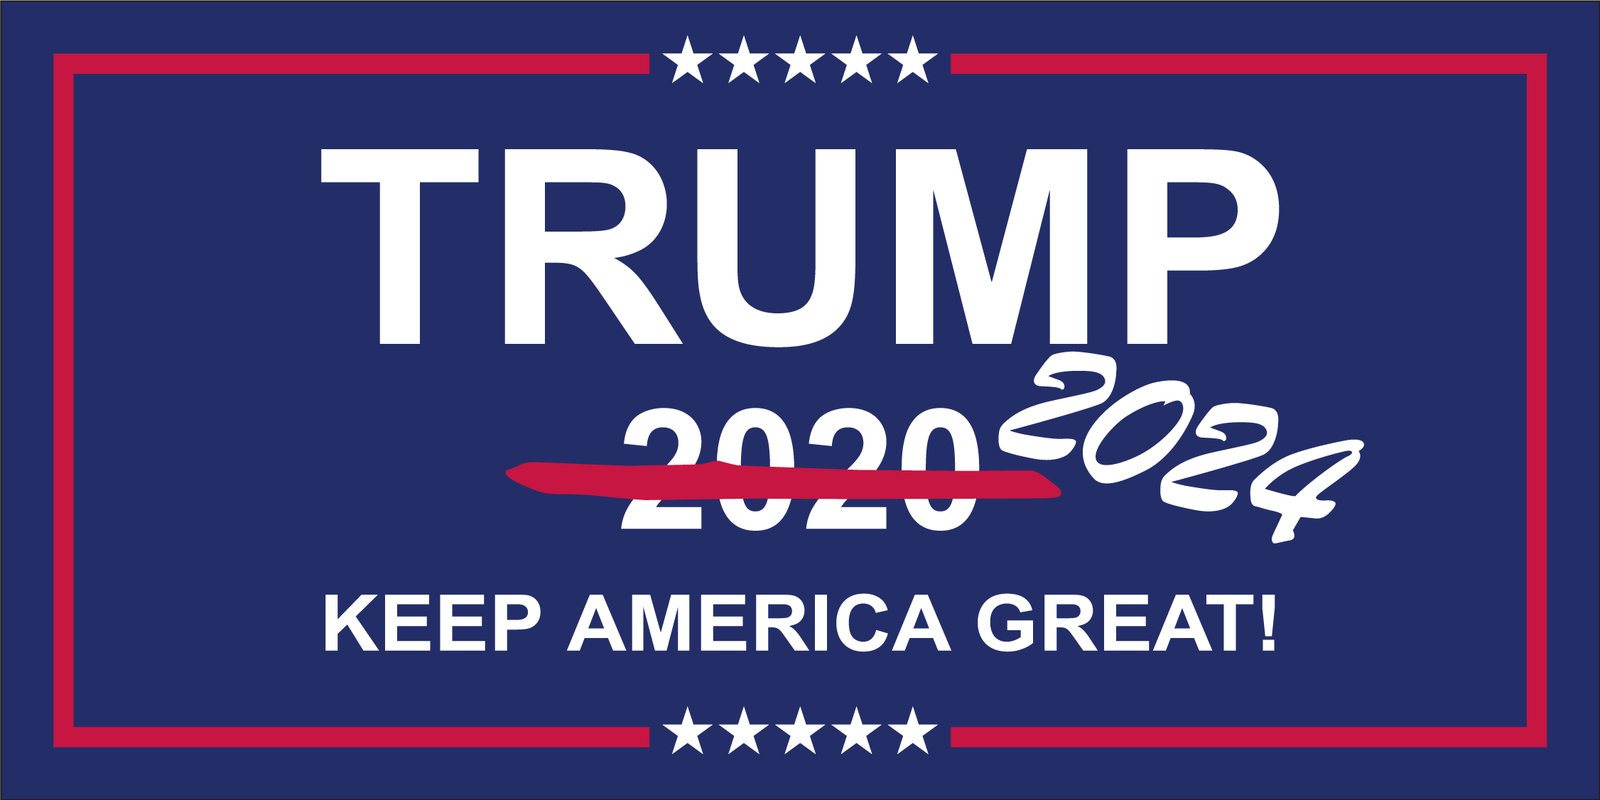 TRUMP 2020 2024 KEEP AMERICA GREAT! Bumper Sticker Made in USA America